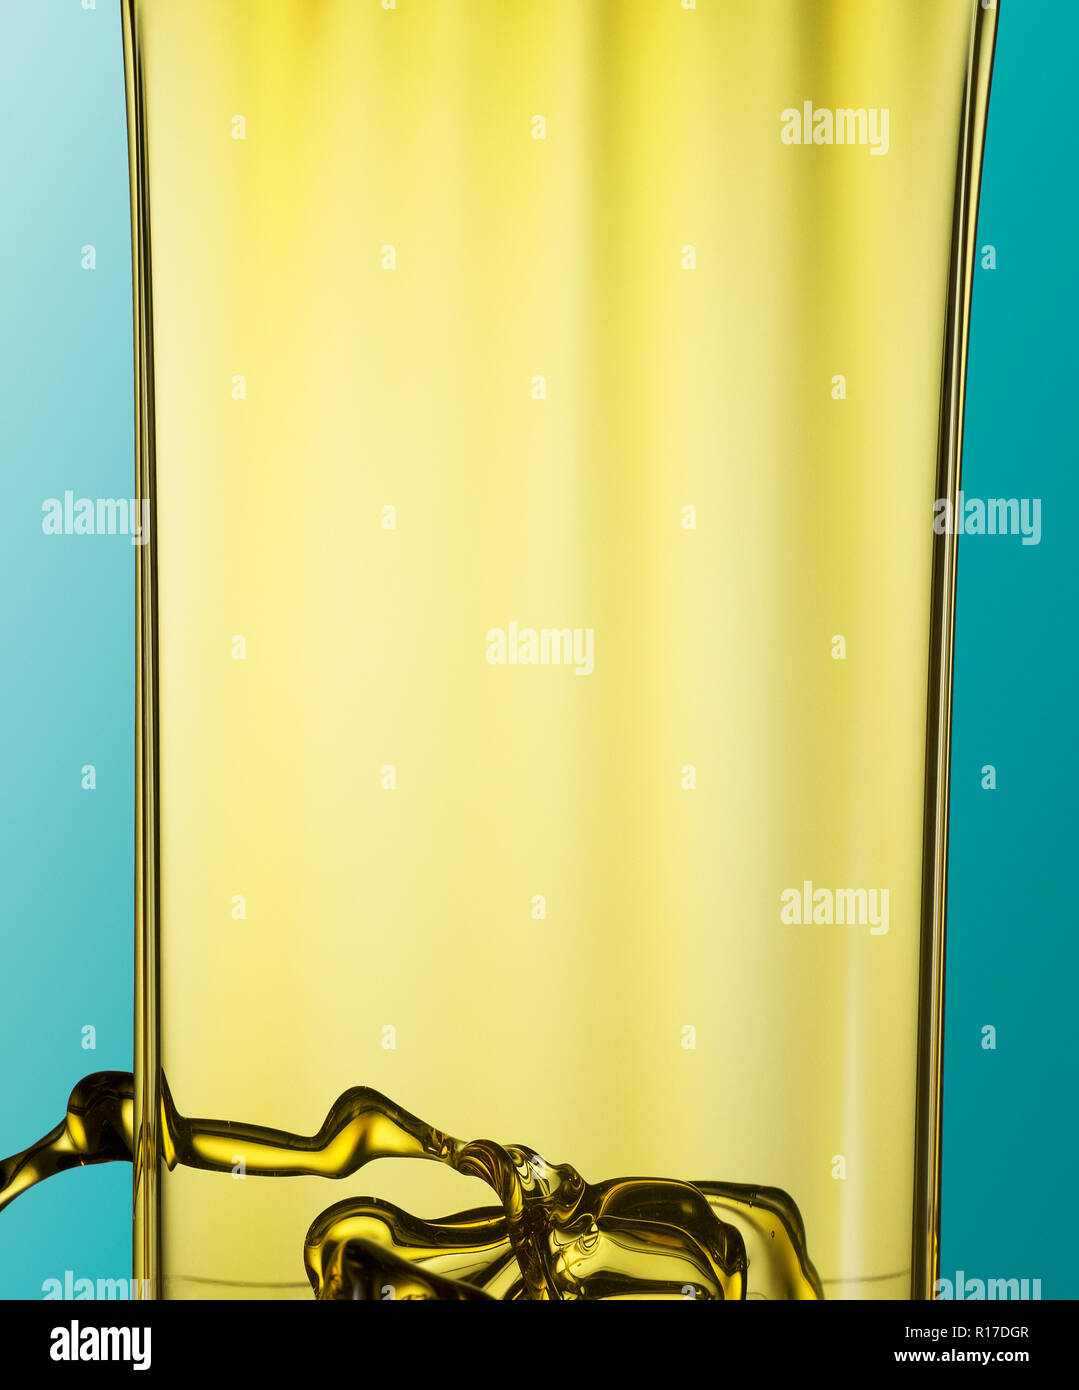 Franja de color dorado aceite fluyendo hacia abajo contra el fondo azul. Foto de stock